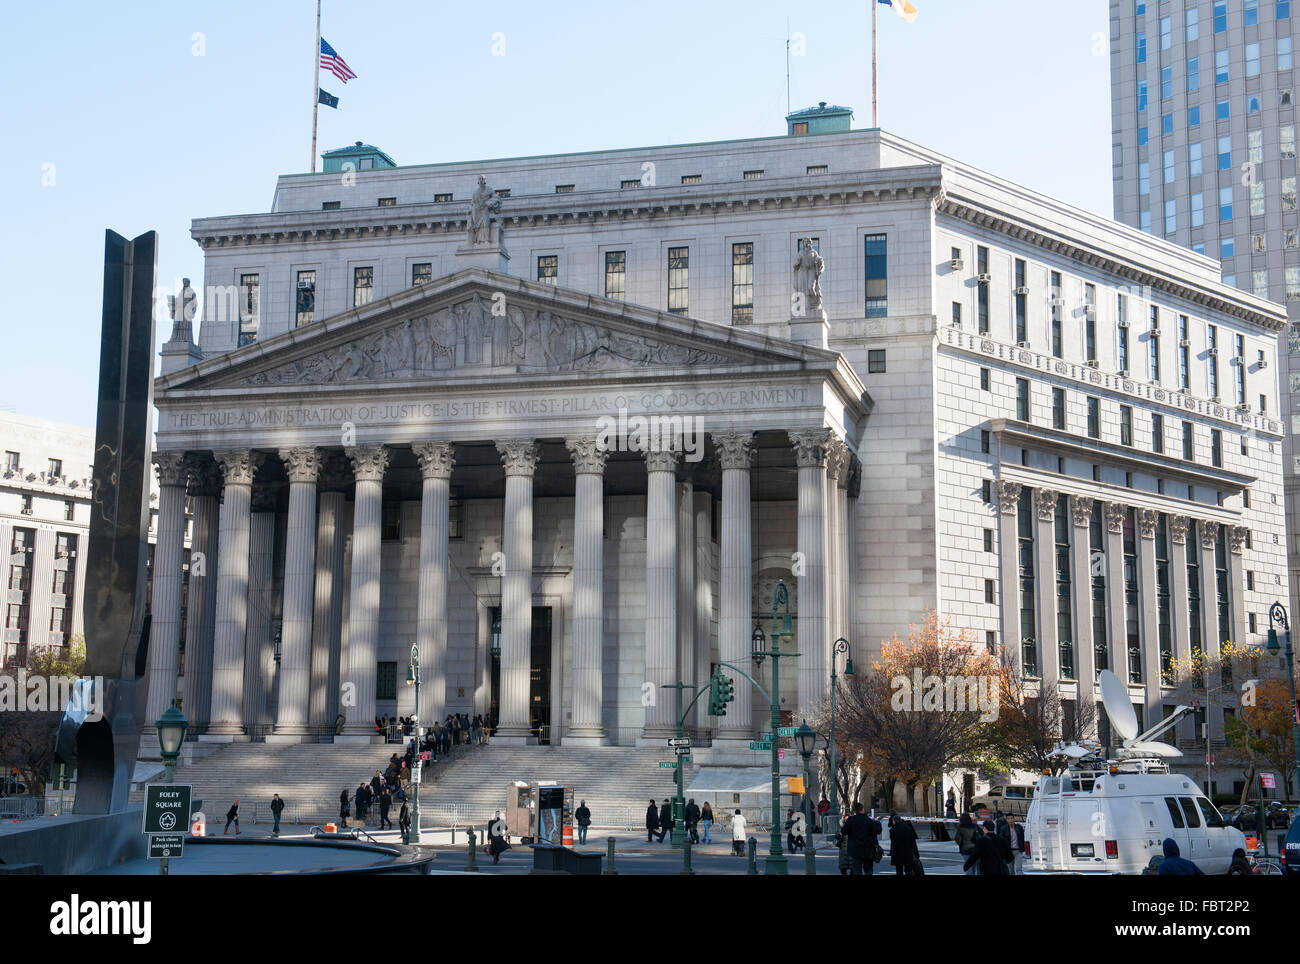 Nouveau bâtiment de la Cour suprême de l'État de New York, Foley Square, Manhattan, New York, NY, USA. Banque D'Images